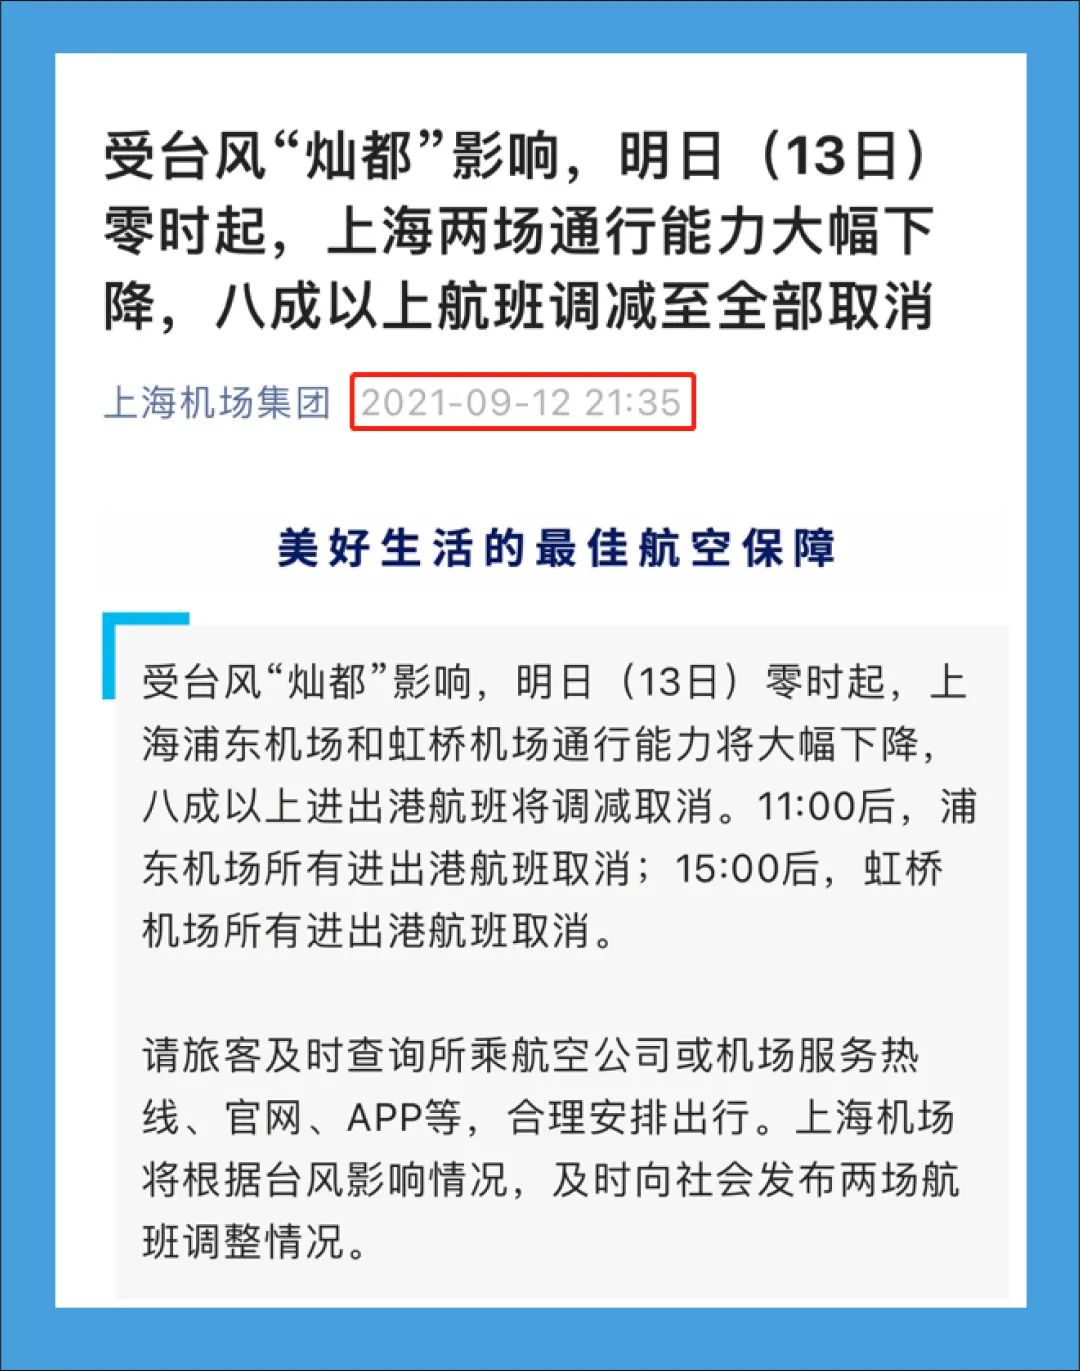 上海浦东和虹桥机场运行正常，网传信息不属实-